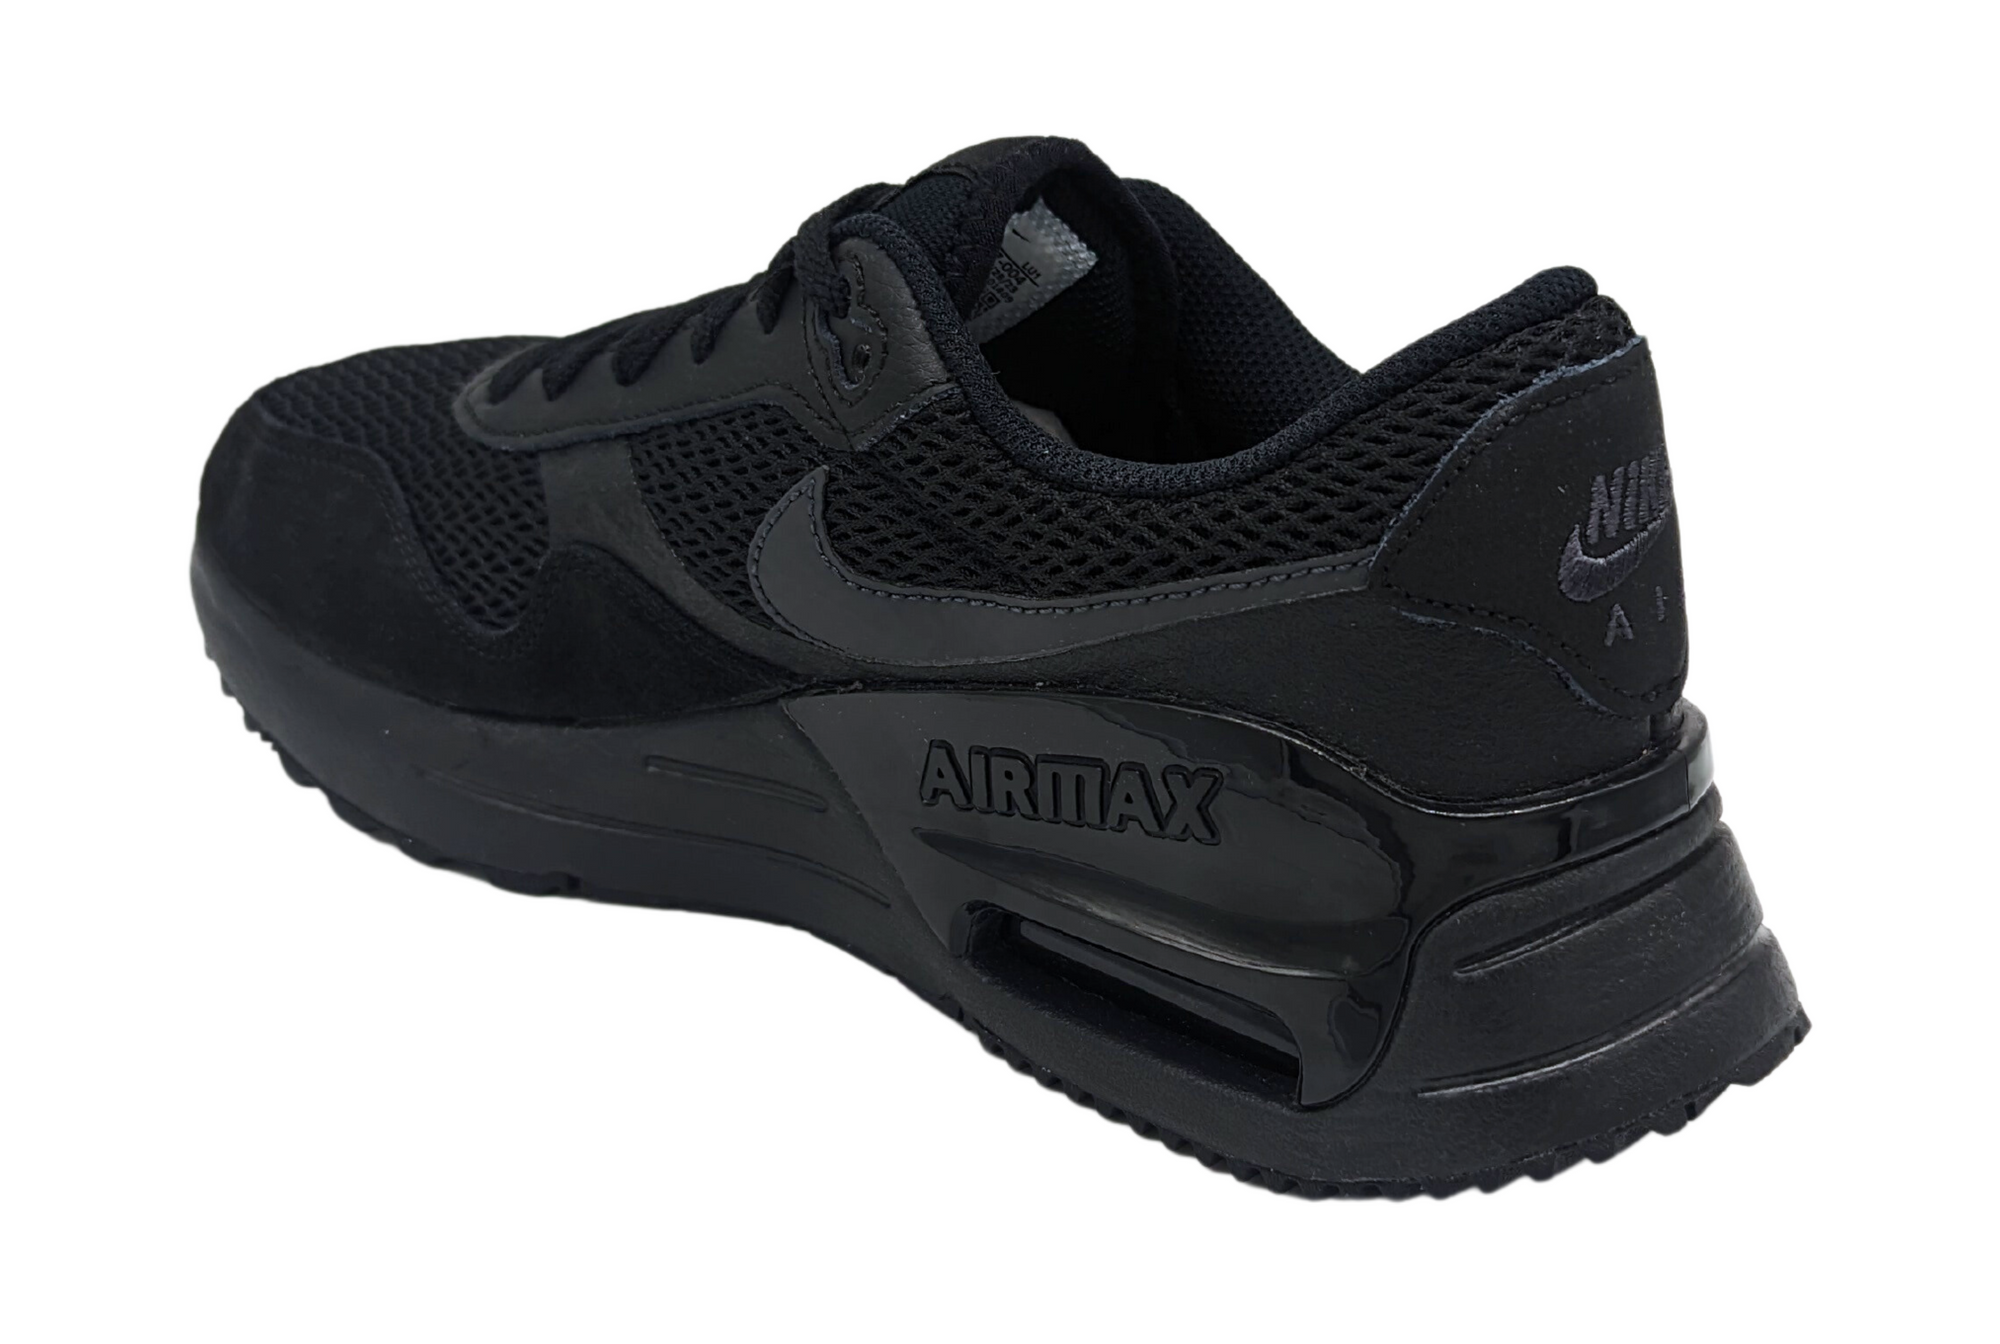 Zapatillas Nike Air Max Systm 004 Est. Vida Hombre Negro